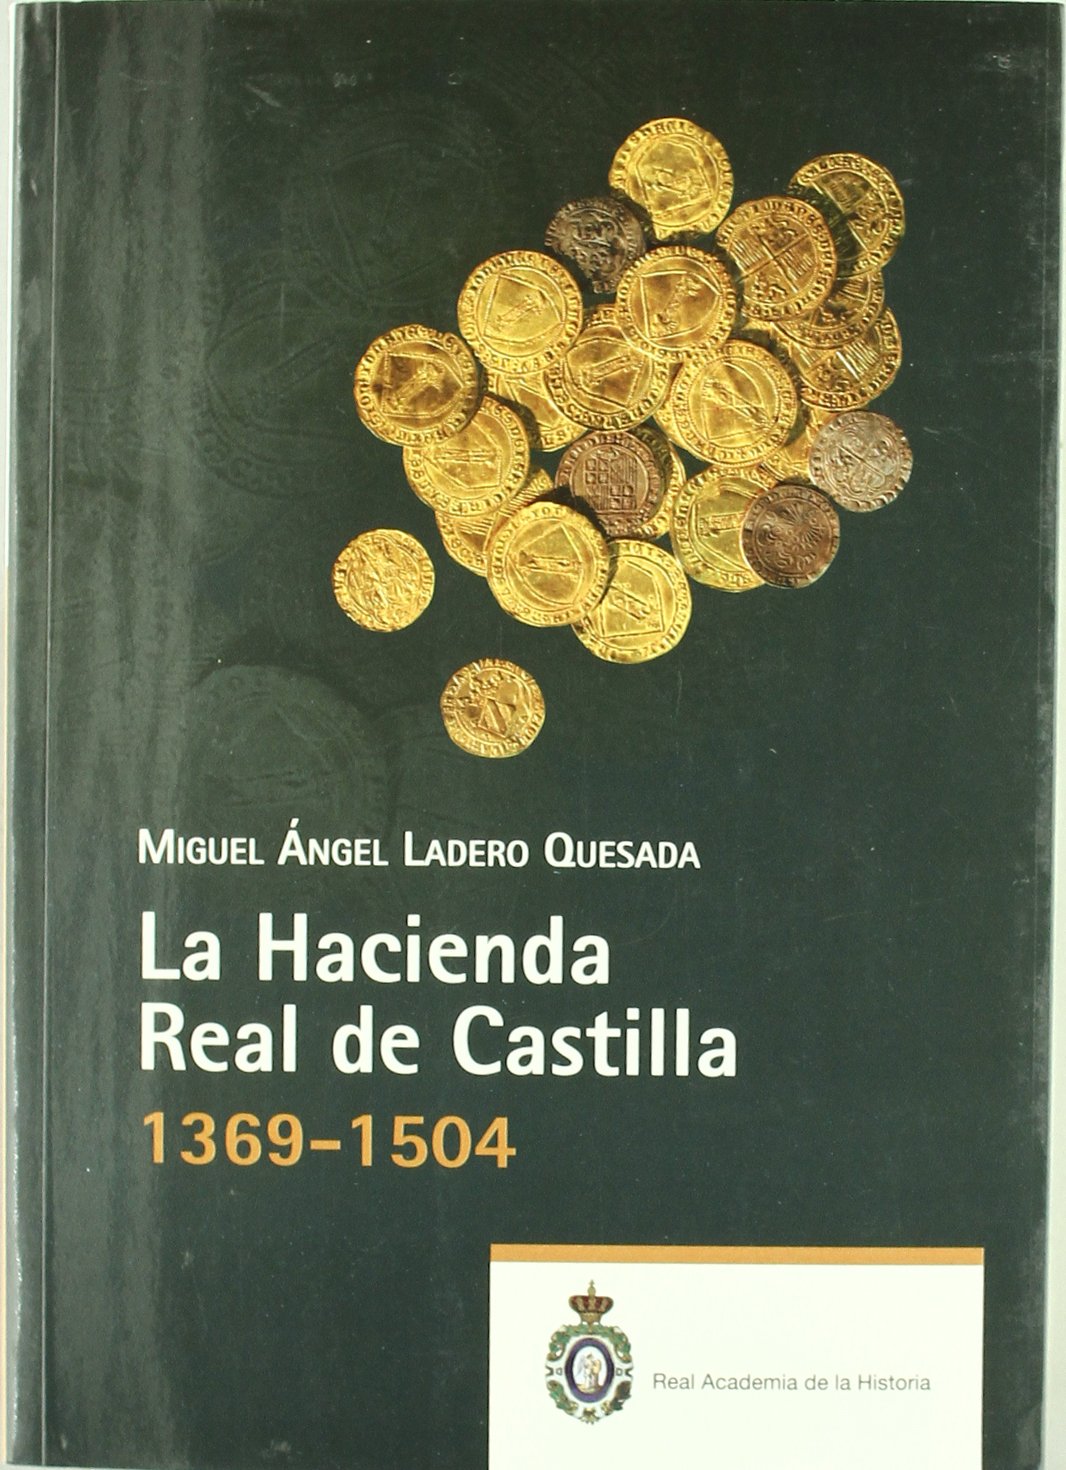 La Hacienda Real de Castilla